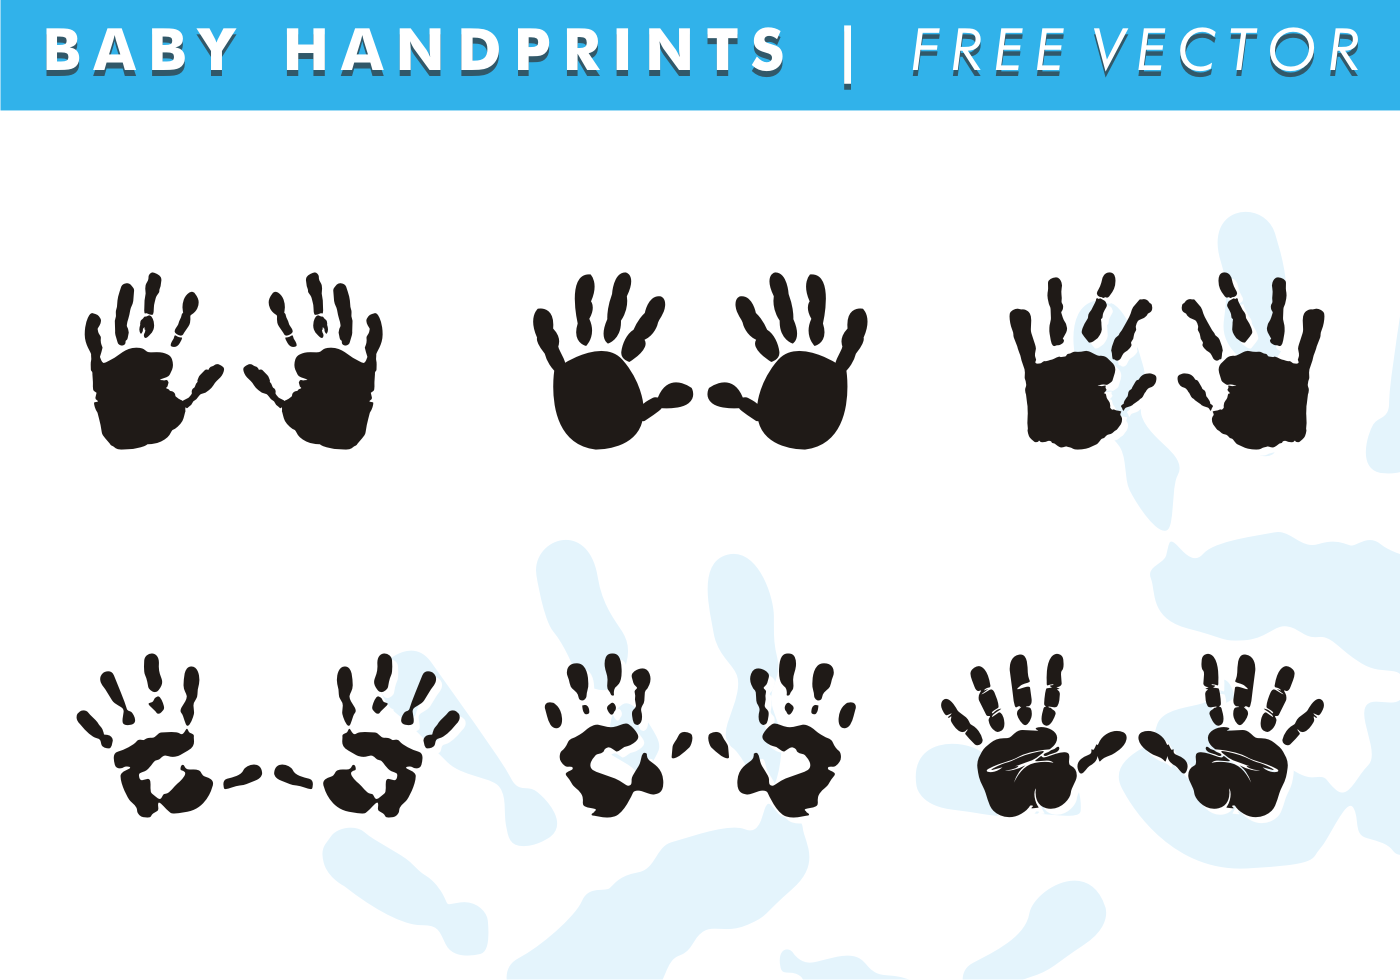 Download Baby Handprints Free Vector 99369 - Download Free Vectors, Clipart Graphics & Vector Art